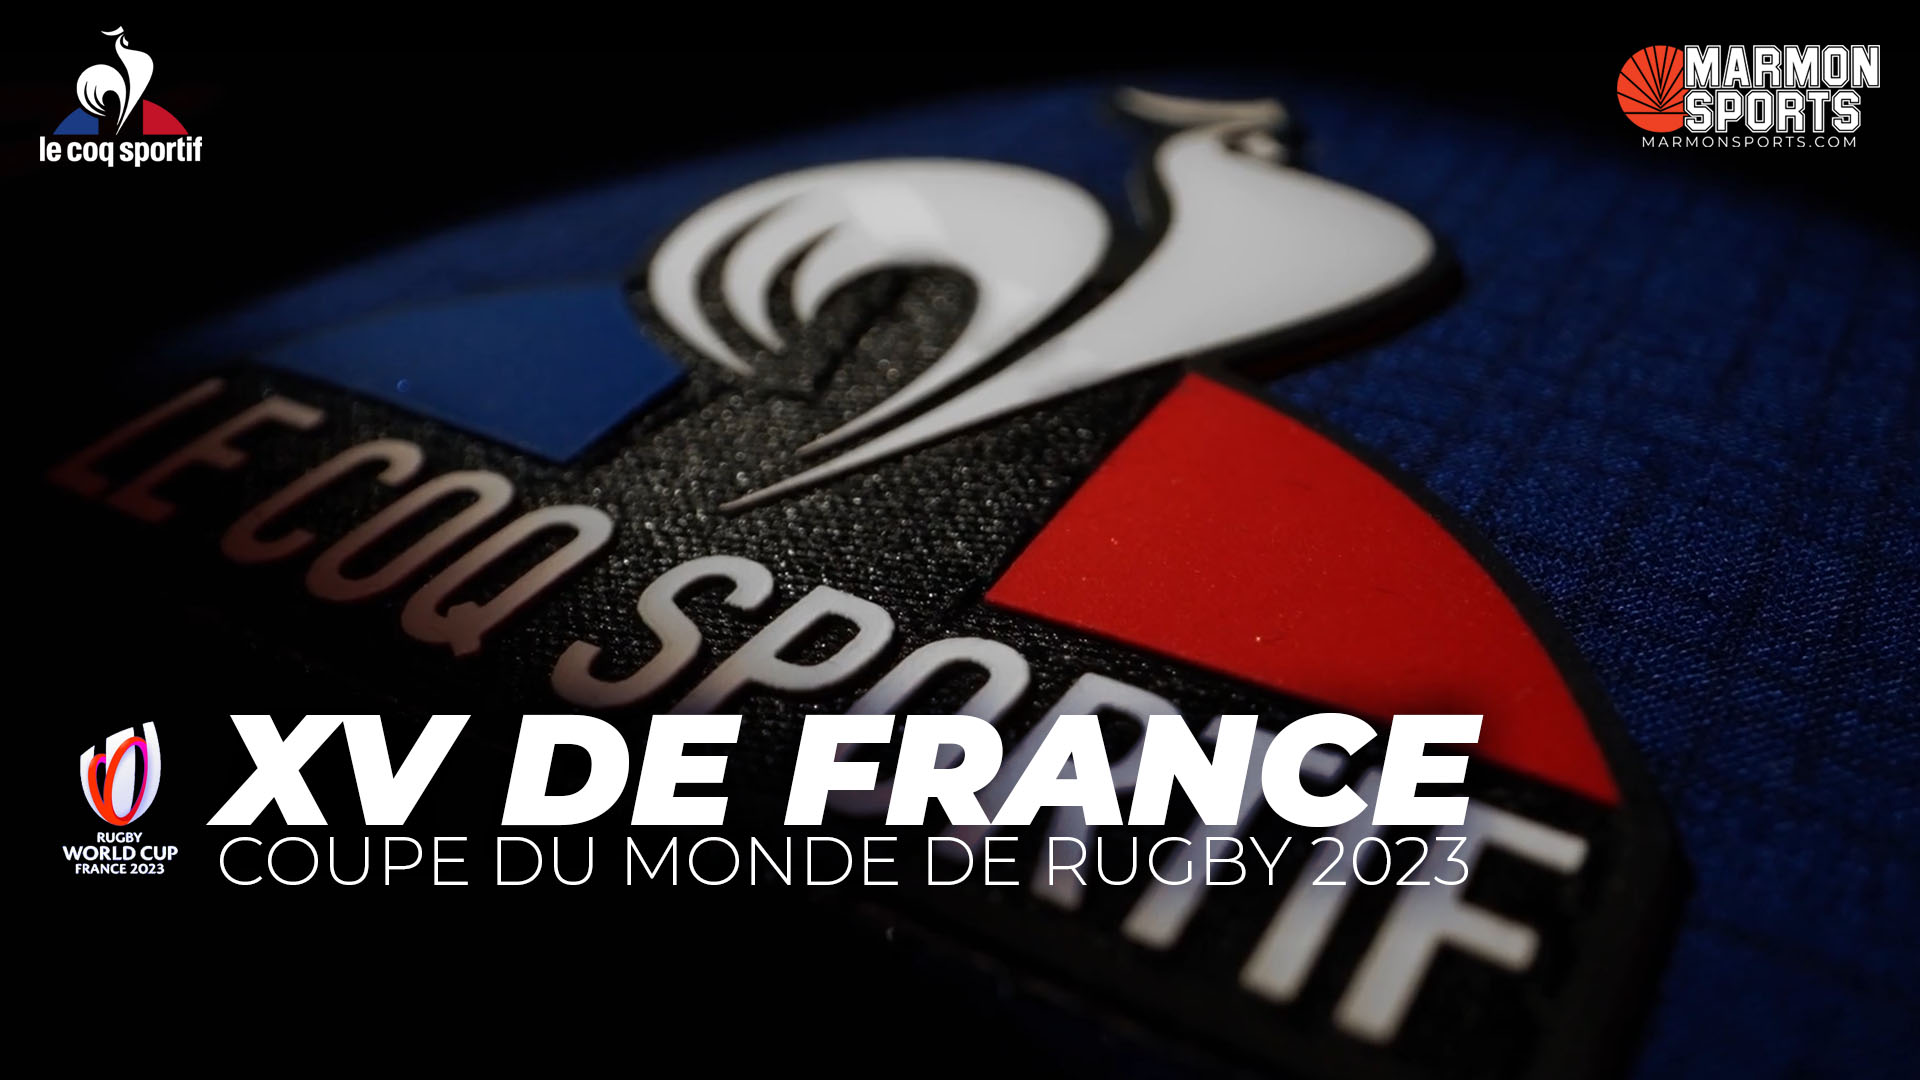 Rugby-Event XV de France - Le Coq Sportif - Le Coq Sportif